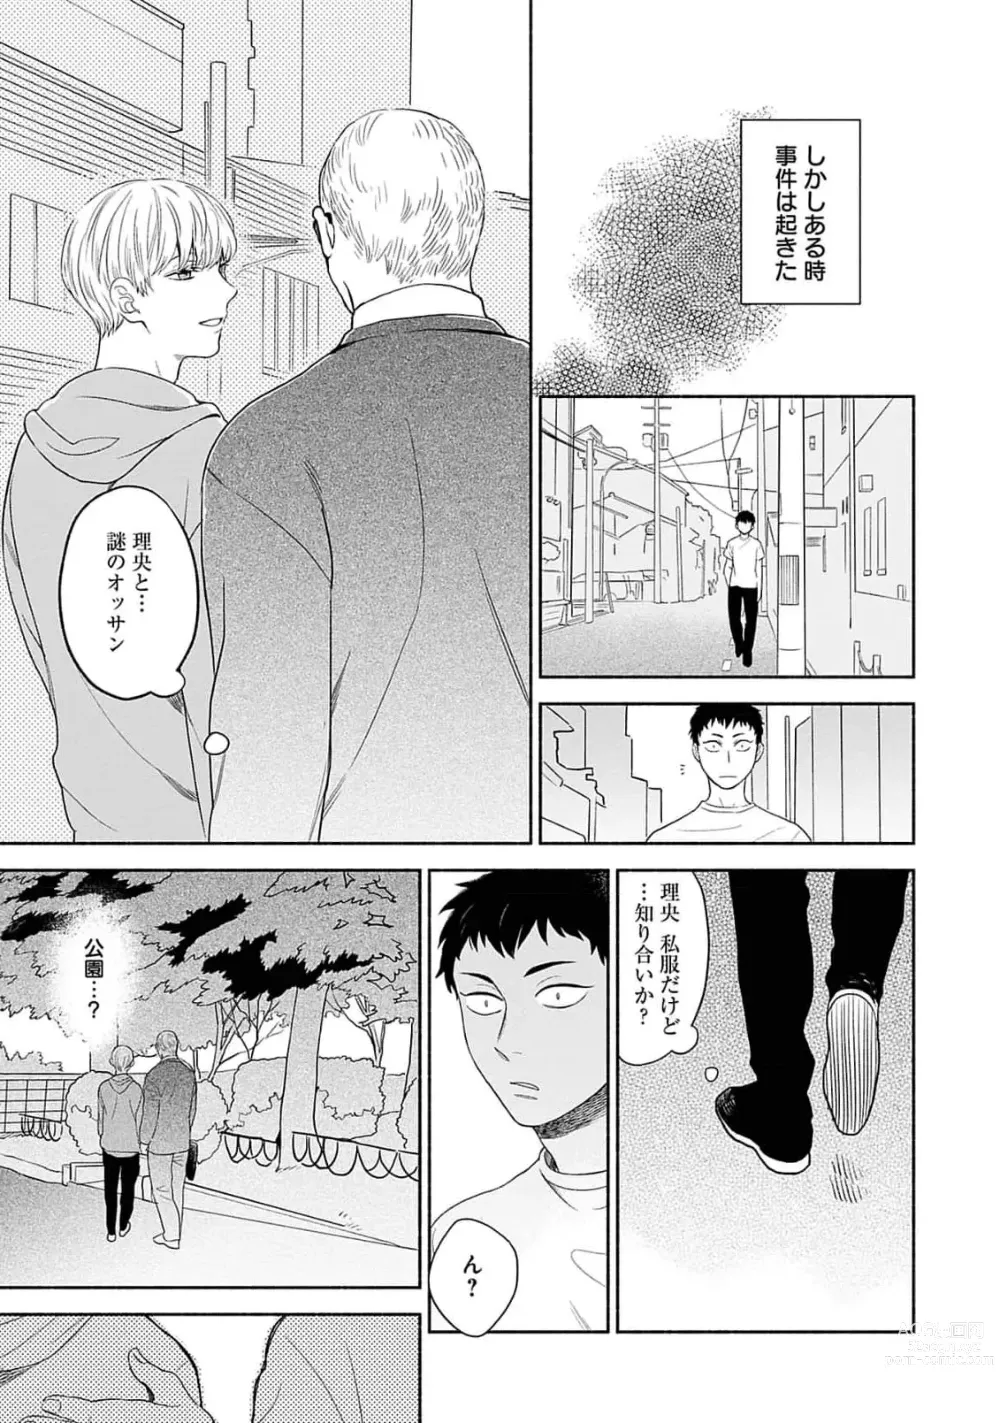 Page 19 of manga Yoru no Kyoudai